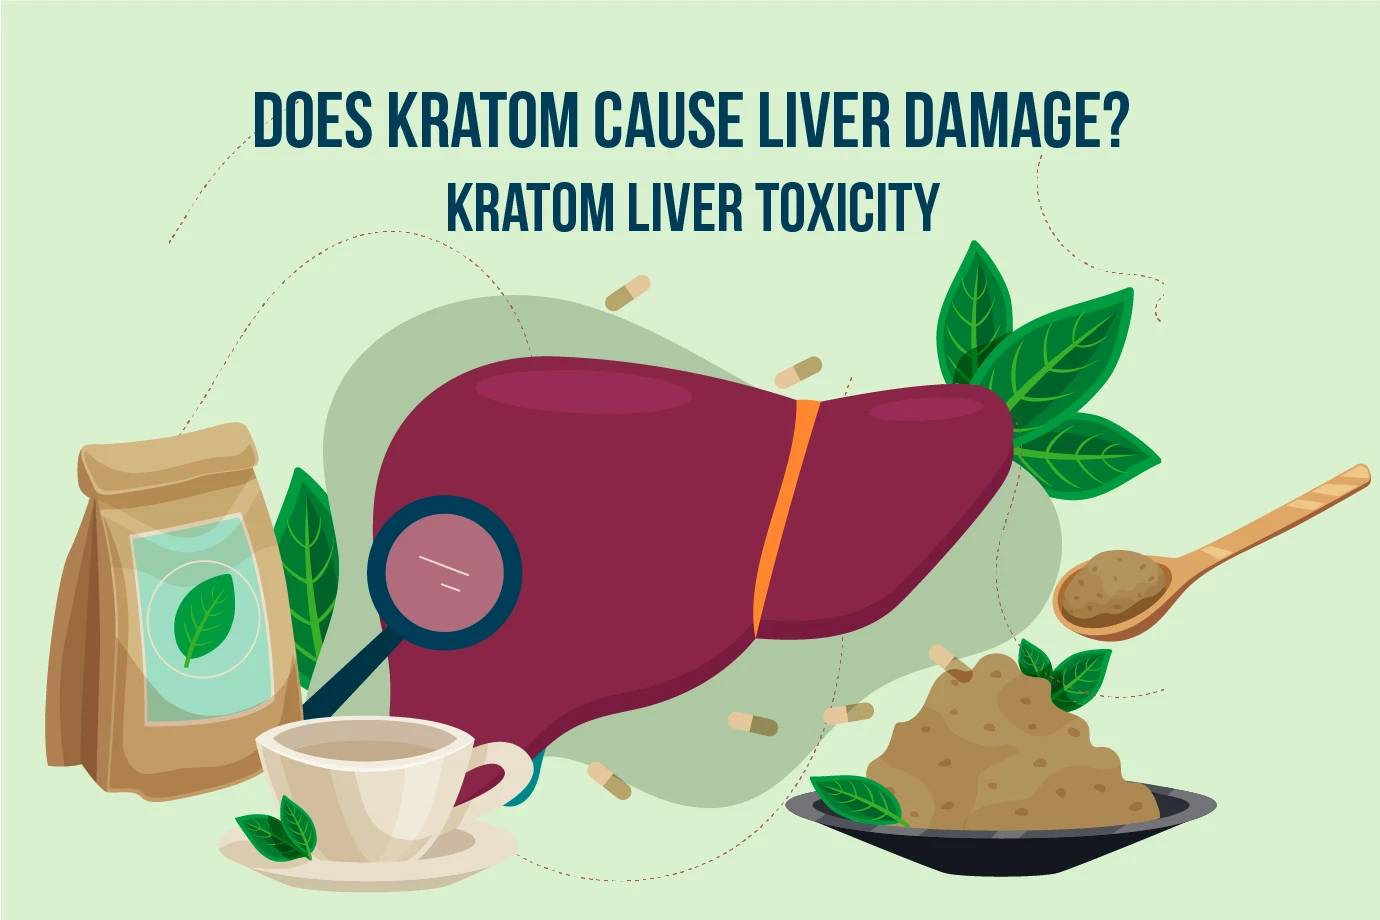 Does kratom cause liver damage? Kratom Liver toxicity
 - DOES KRATOM CAUSE LIVER DAMAGE?
KRATOM LIVER TOXICITY